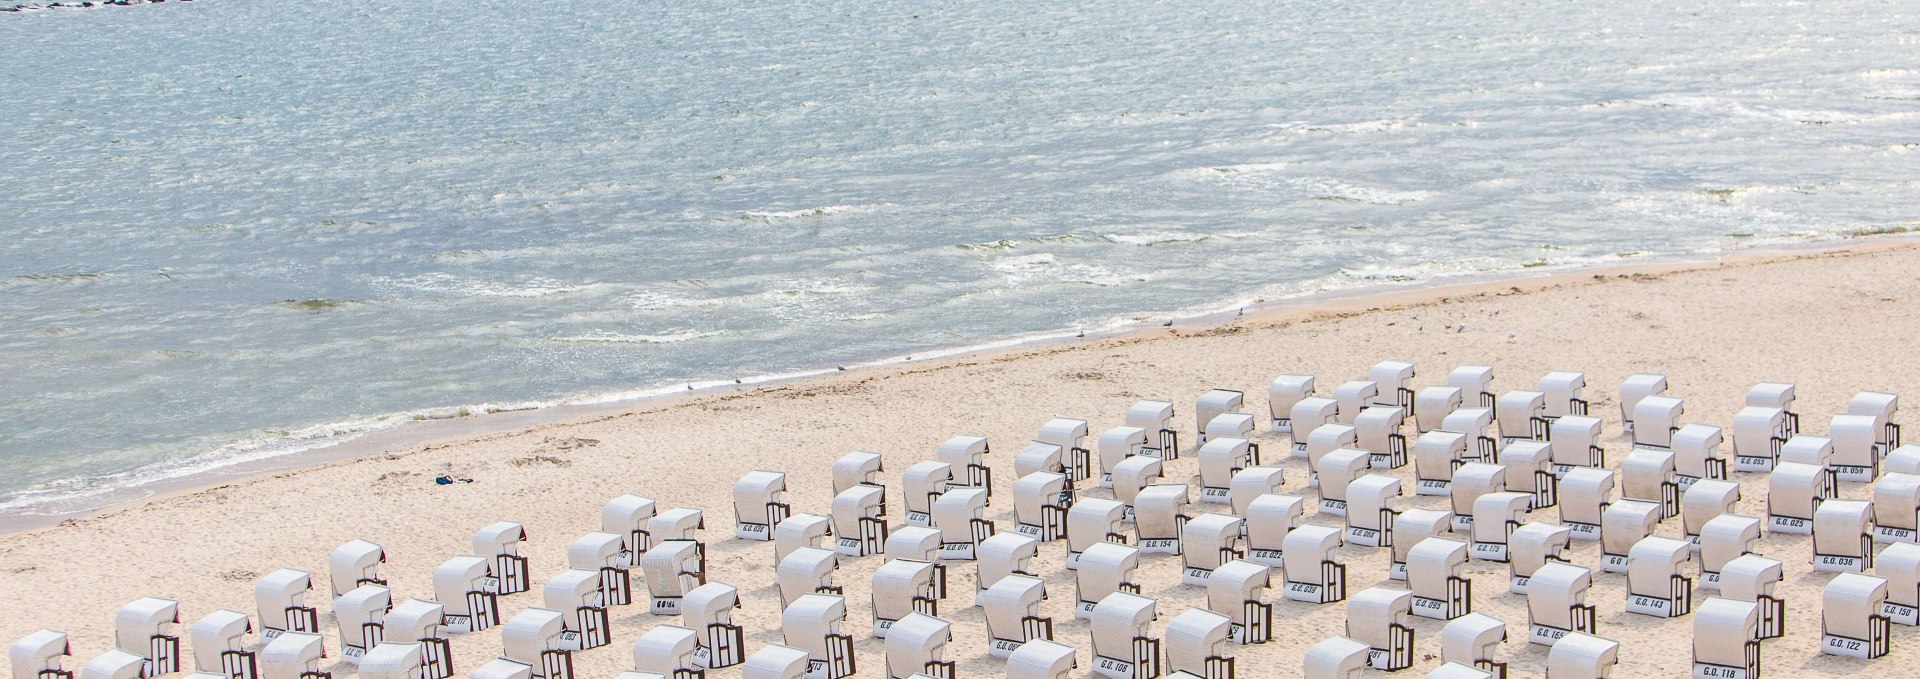 Wie kleine Miniaturfiguren reihen sich weiße Strandkörbe am Selliner Strand aneinander., © TMV/Krauss